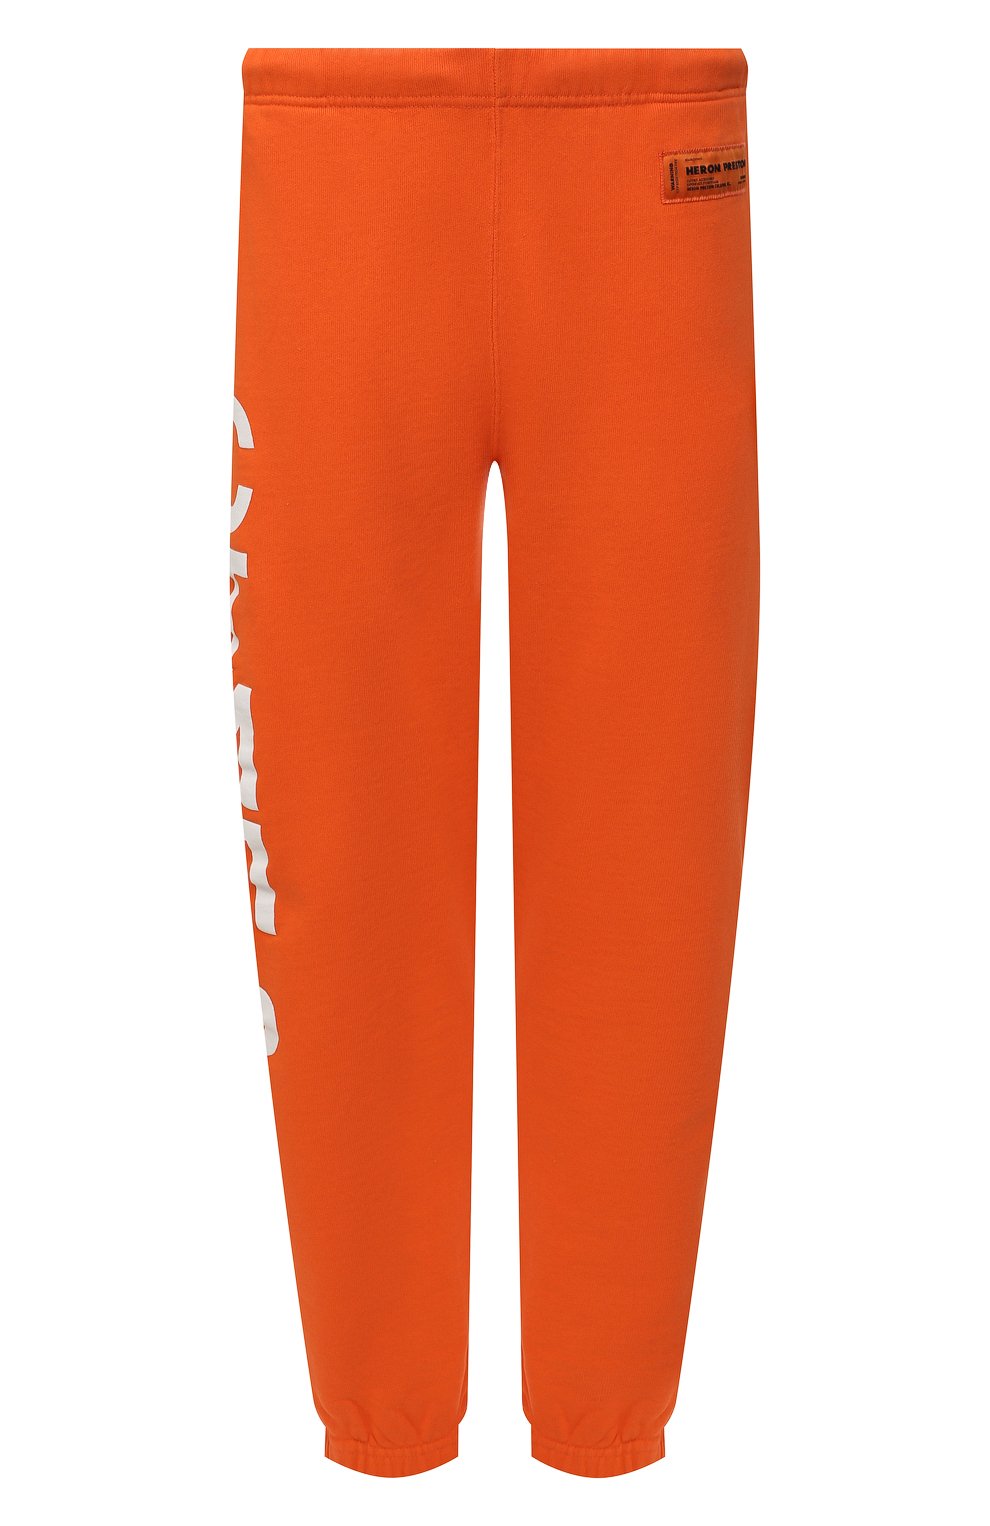 Мужские хлопковые джоггеры HERON PRESTON оранжевого цвета, арт. HMCH024C99JER0012201 | Фото 1 (Длина (брюки, джинсы): Стандартные; Материал внешний: Хлопок; Стили: Спорт-шик; Силуэт М (брюки): Джоггеры)